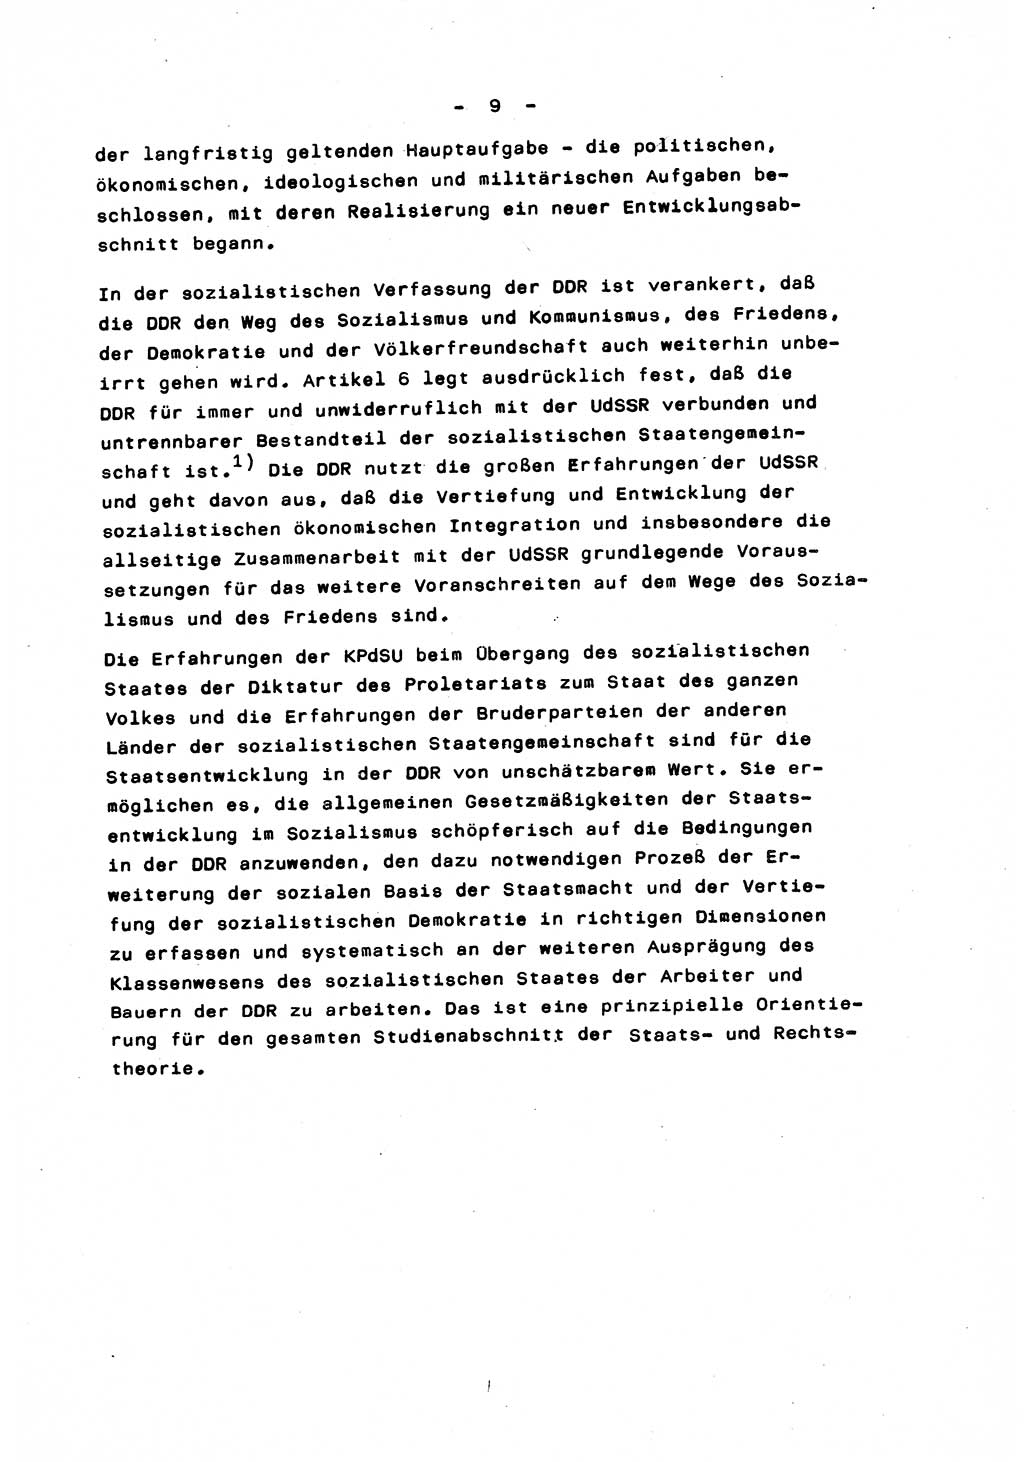 Marxistisch-leninistische Staats- und Rechtstheorie [Deutsche Demokratische Republik (DDR)] 1975, Seite 9 (ML St.-R.-Th. DDR 1975, S. 9)